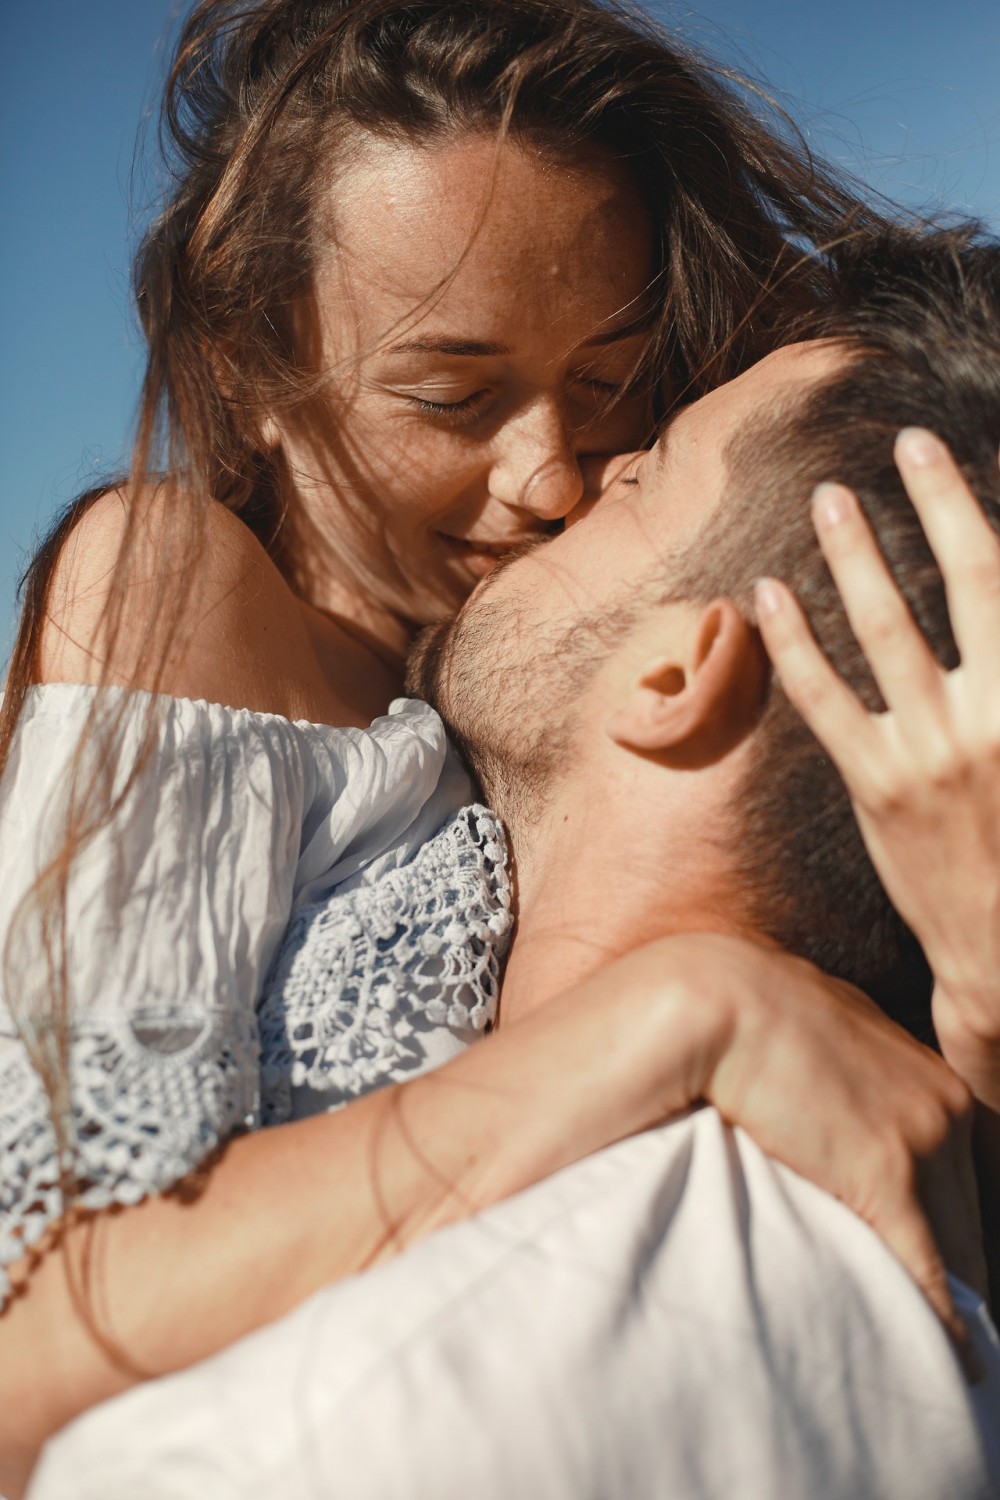 Как защитить свою кожу после поцелуев, если у парня щетина?